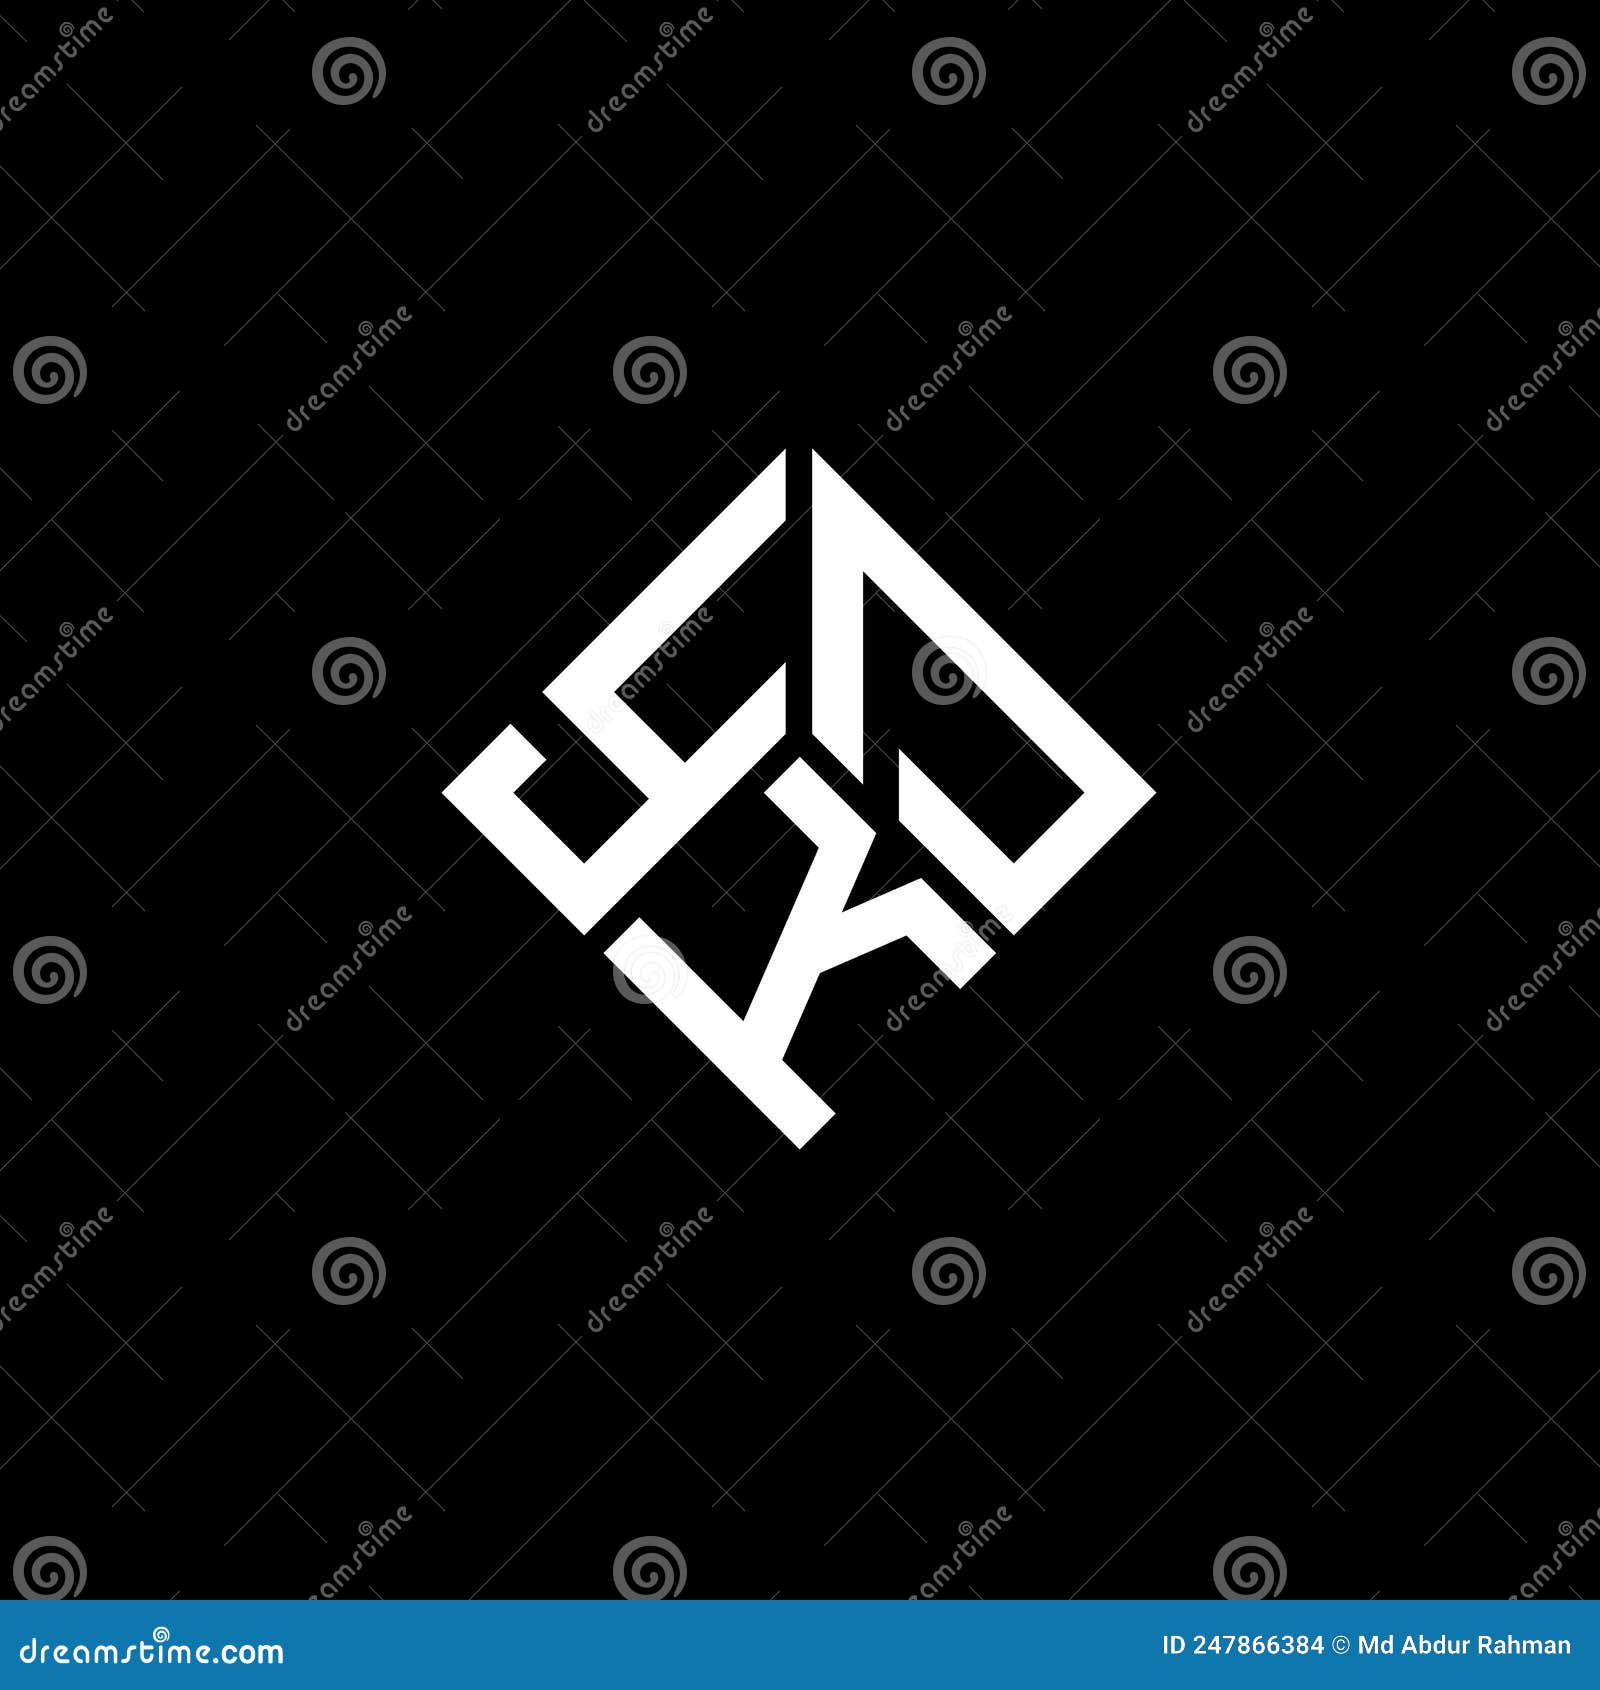 Ykd Letter Logo Design On Black Background Ykd Creative Initials Letter Logo Concept Stock